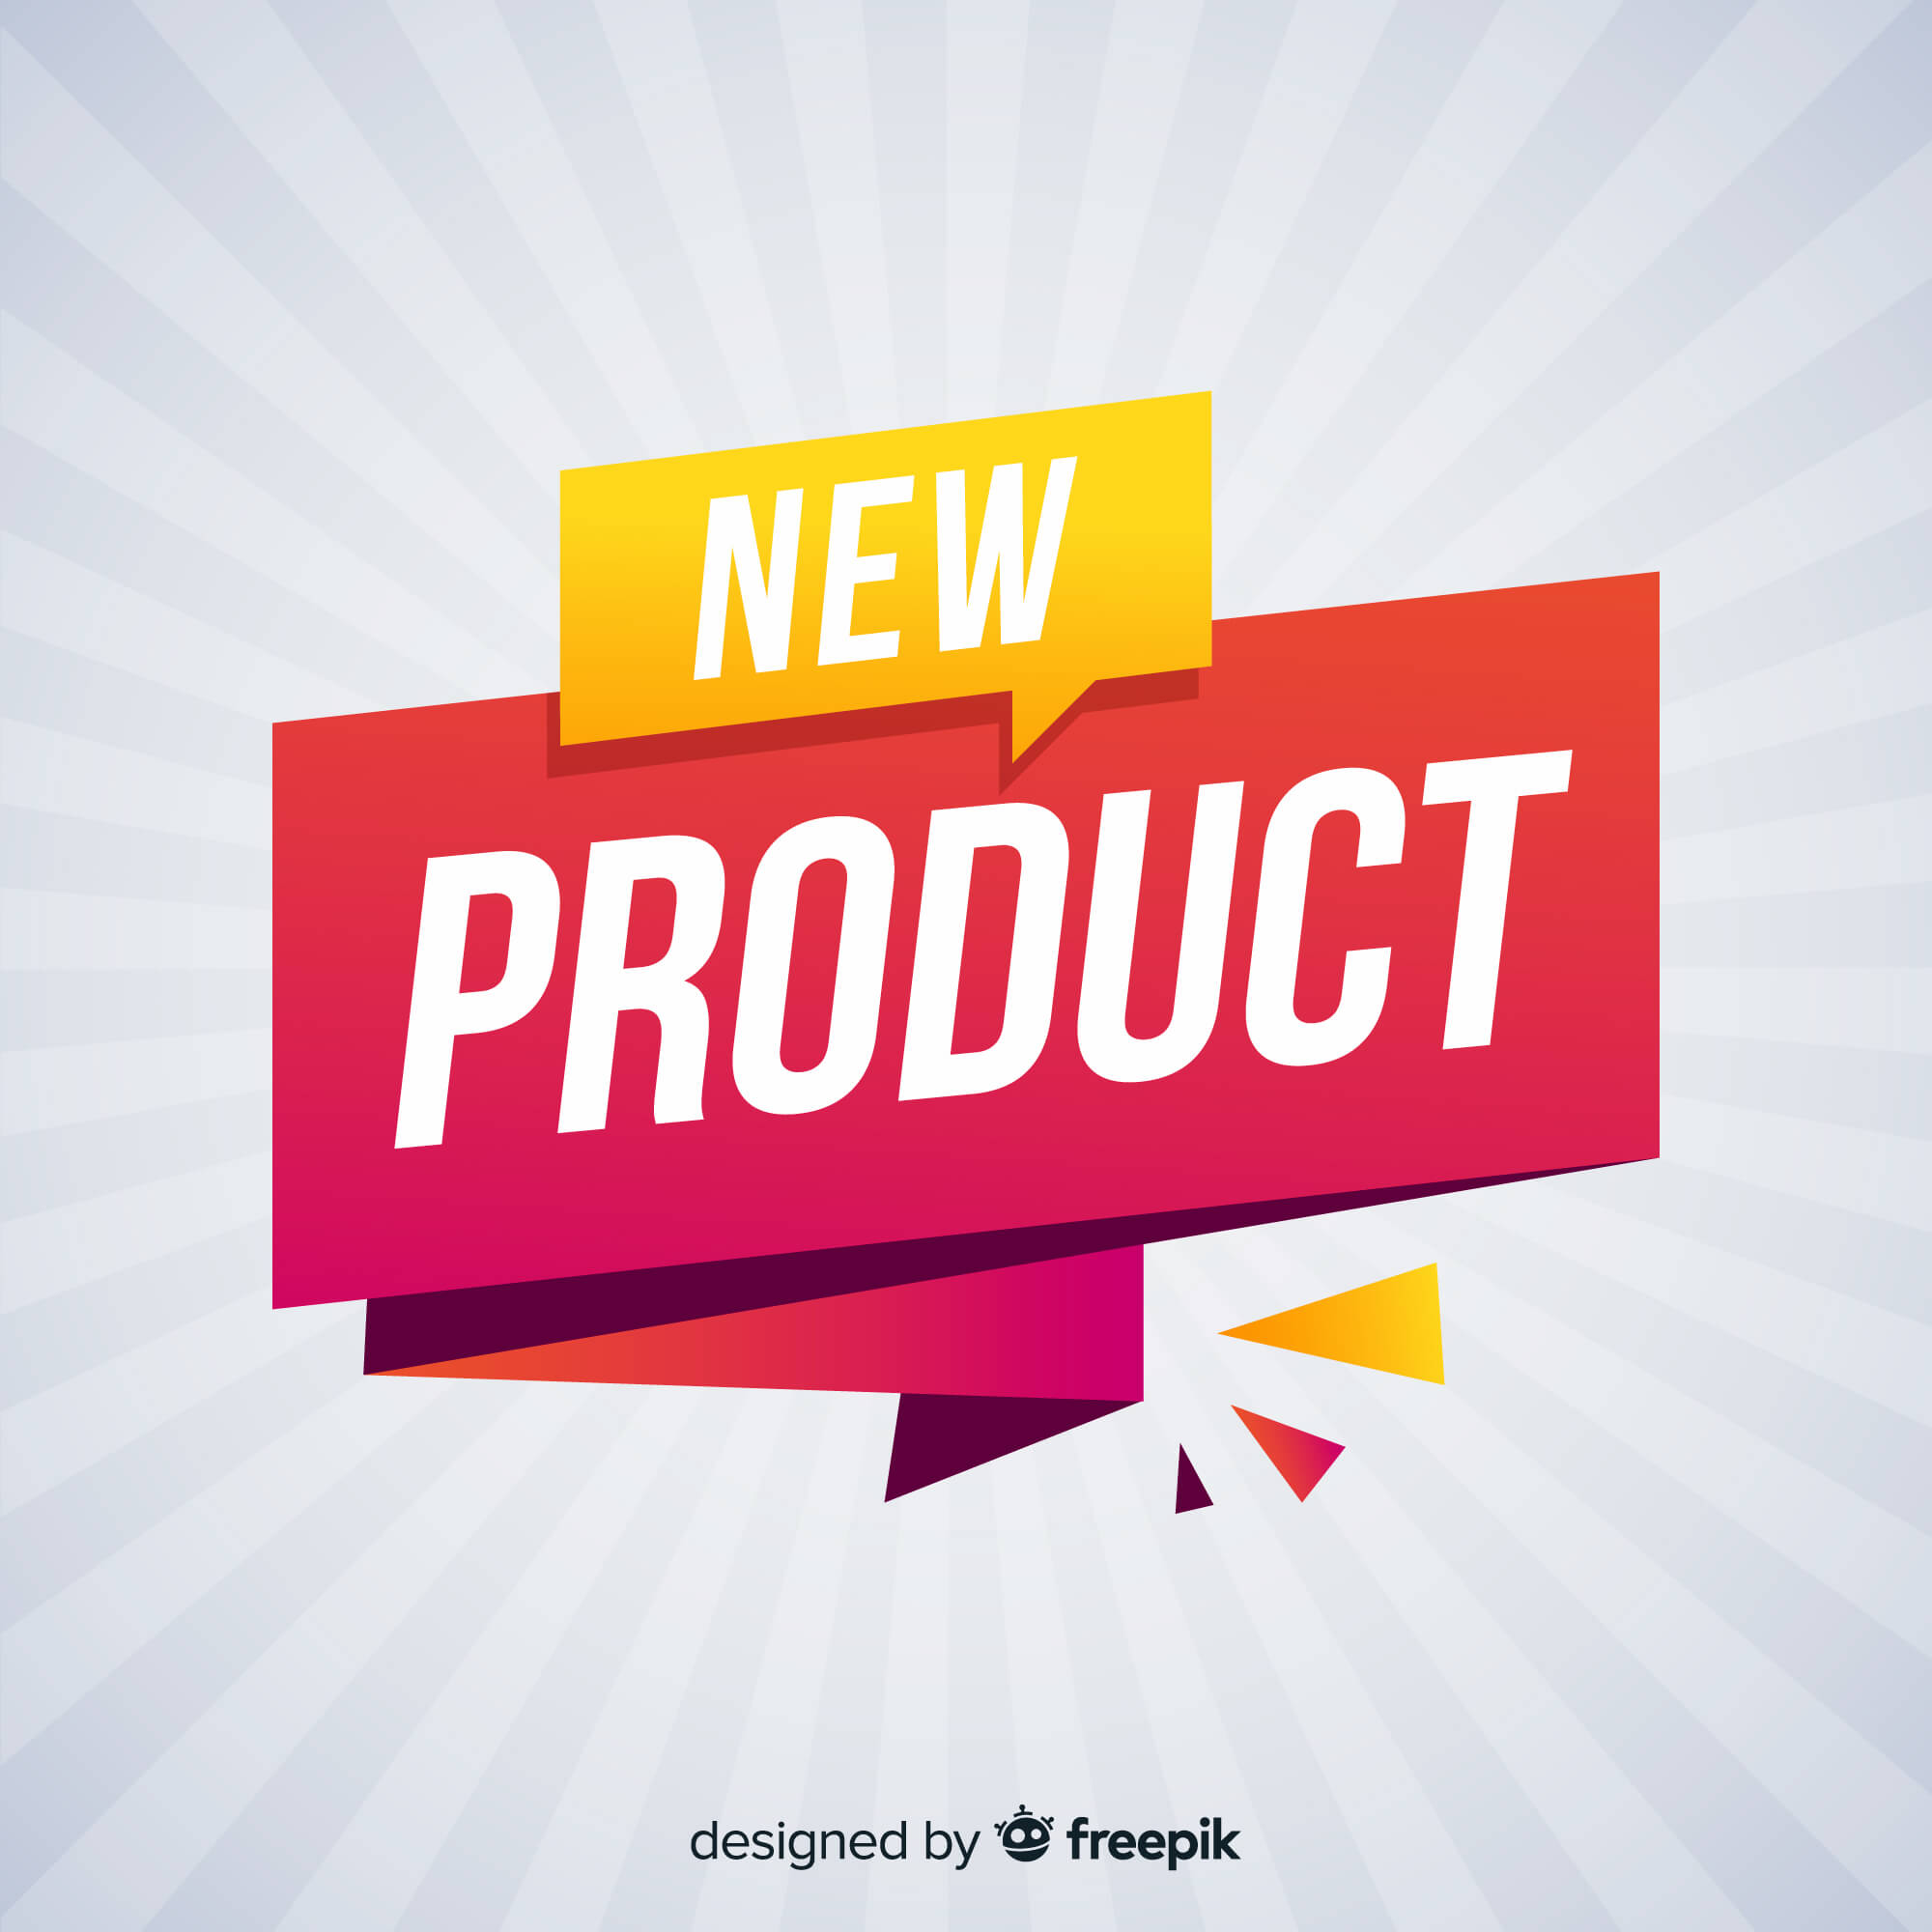 מוצר חדש מאמר | image Title highlighted New Product